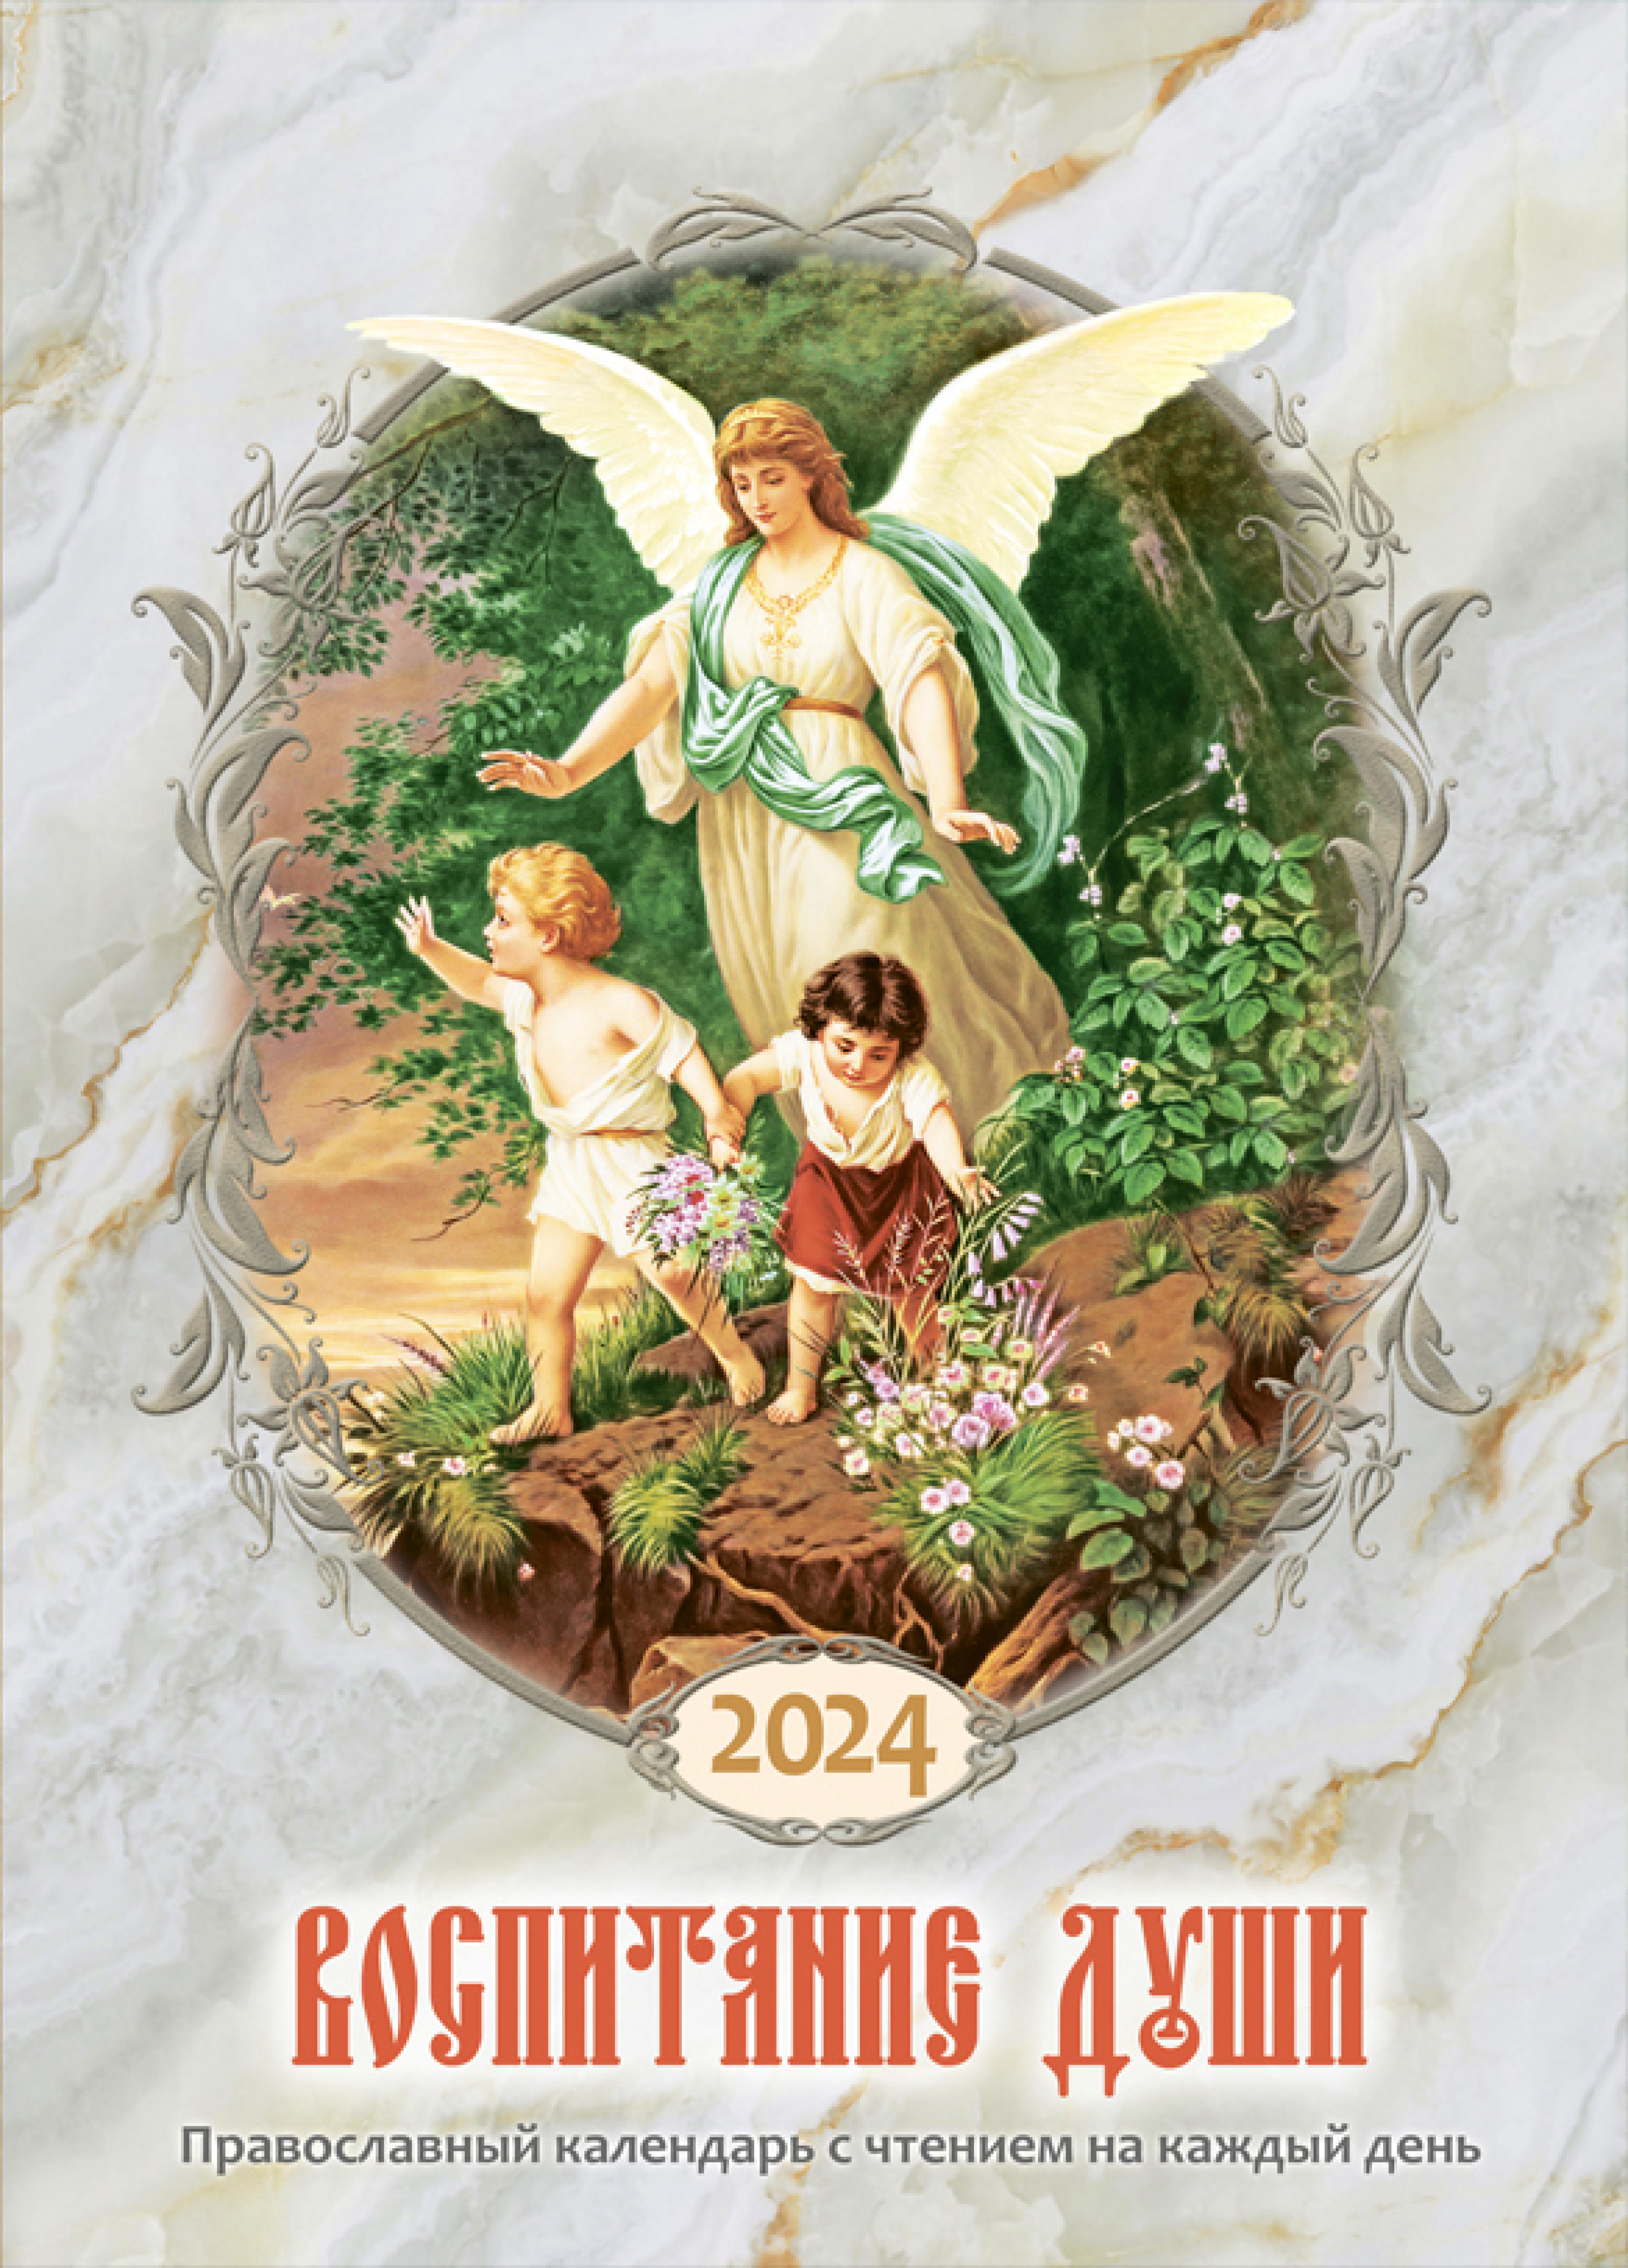 Календарь православный на 2024 год. Воспитание души - фото